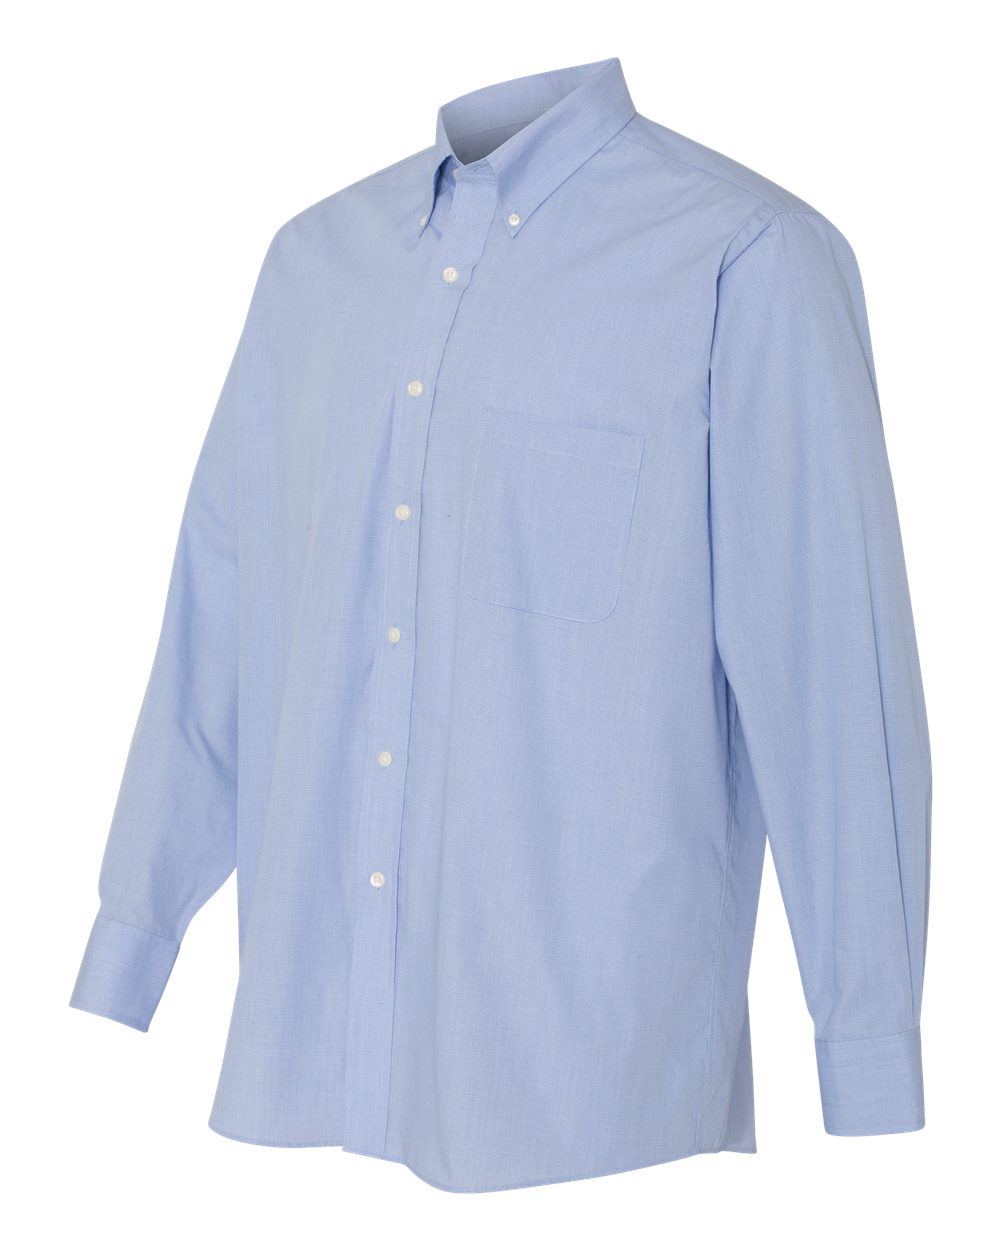 Van Heusen - Yarn Dyed Mini Check Long Sleeve Shirt - 13V0426